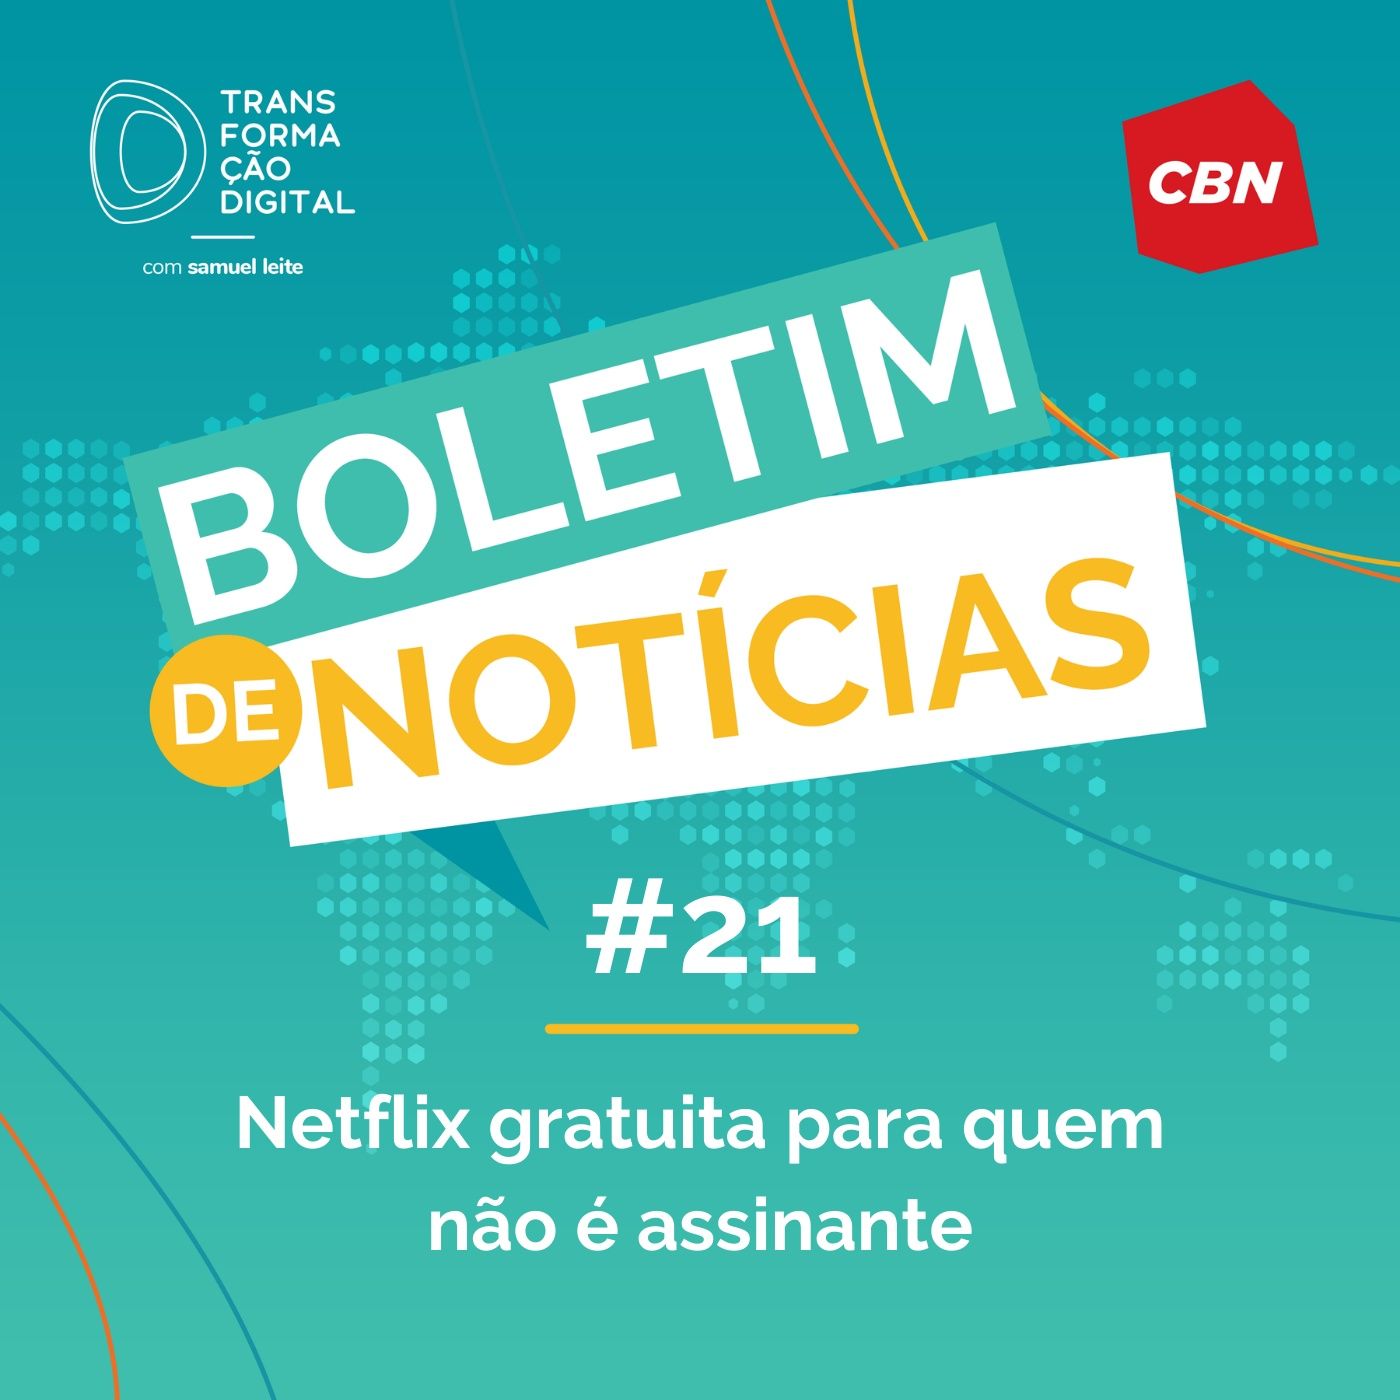 Transformação Digital CBN - Boletim de Notícias #21 - Netflix gratuita para quem não é assinante